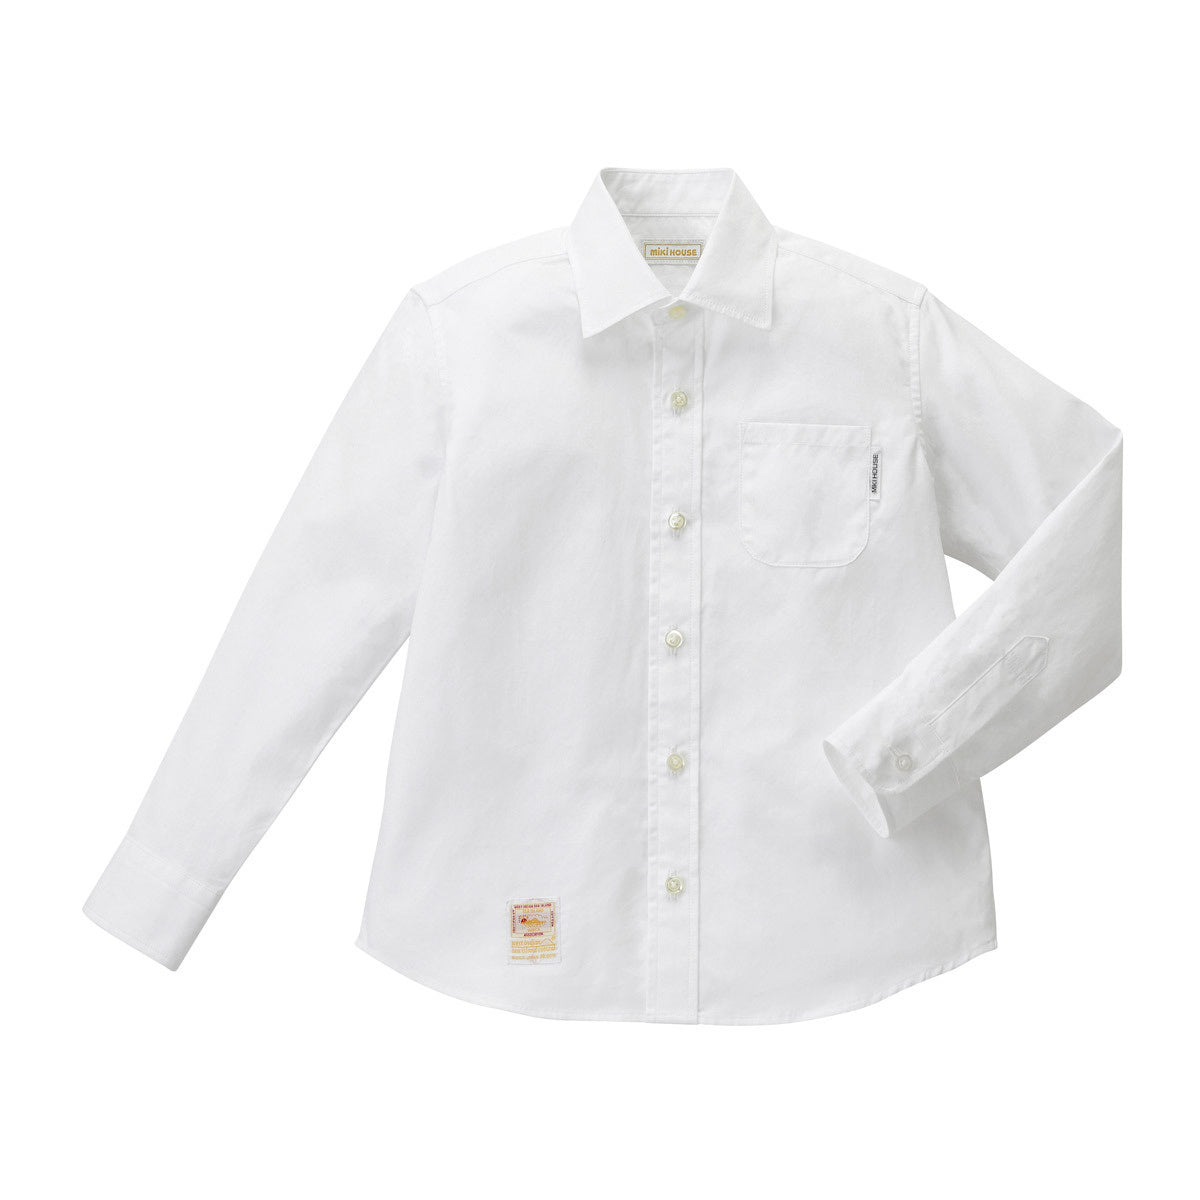 长 - 衬衫衬衫Kaijima棉花